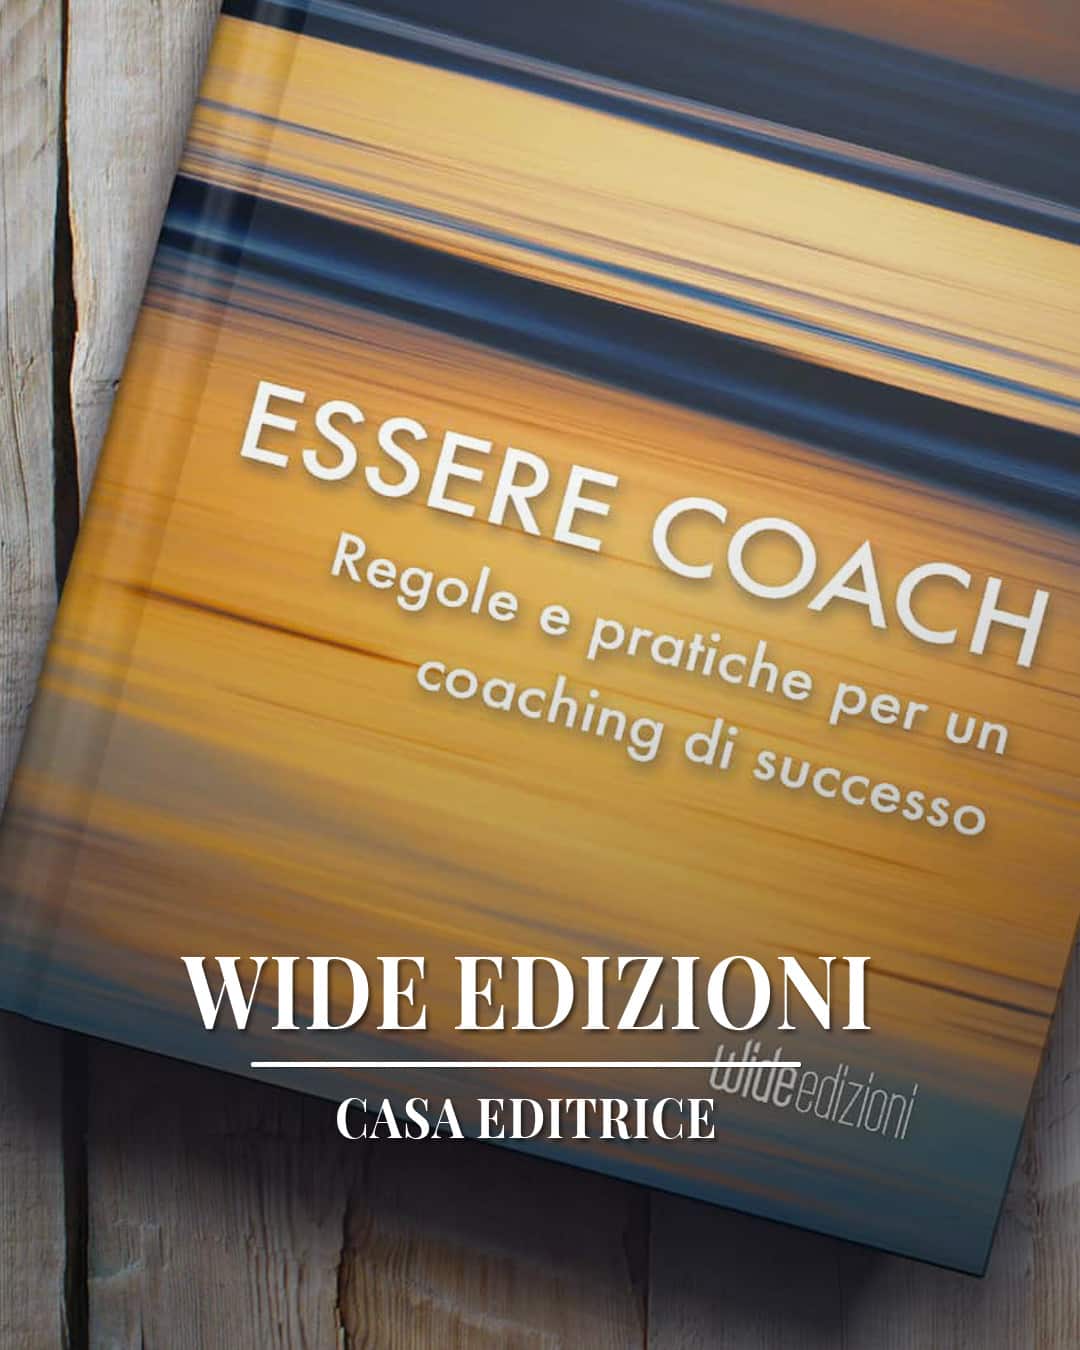  Essere Coach - Regole e pratiche per un coaching di successo